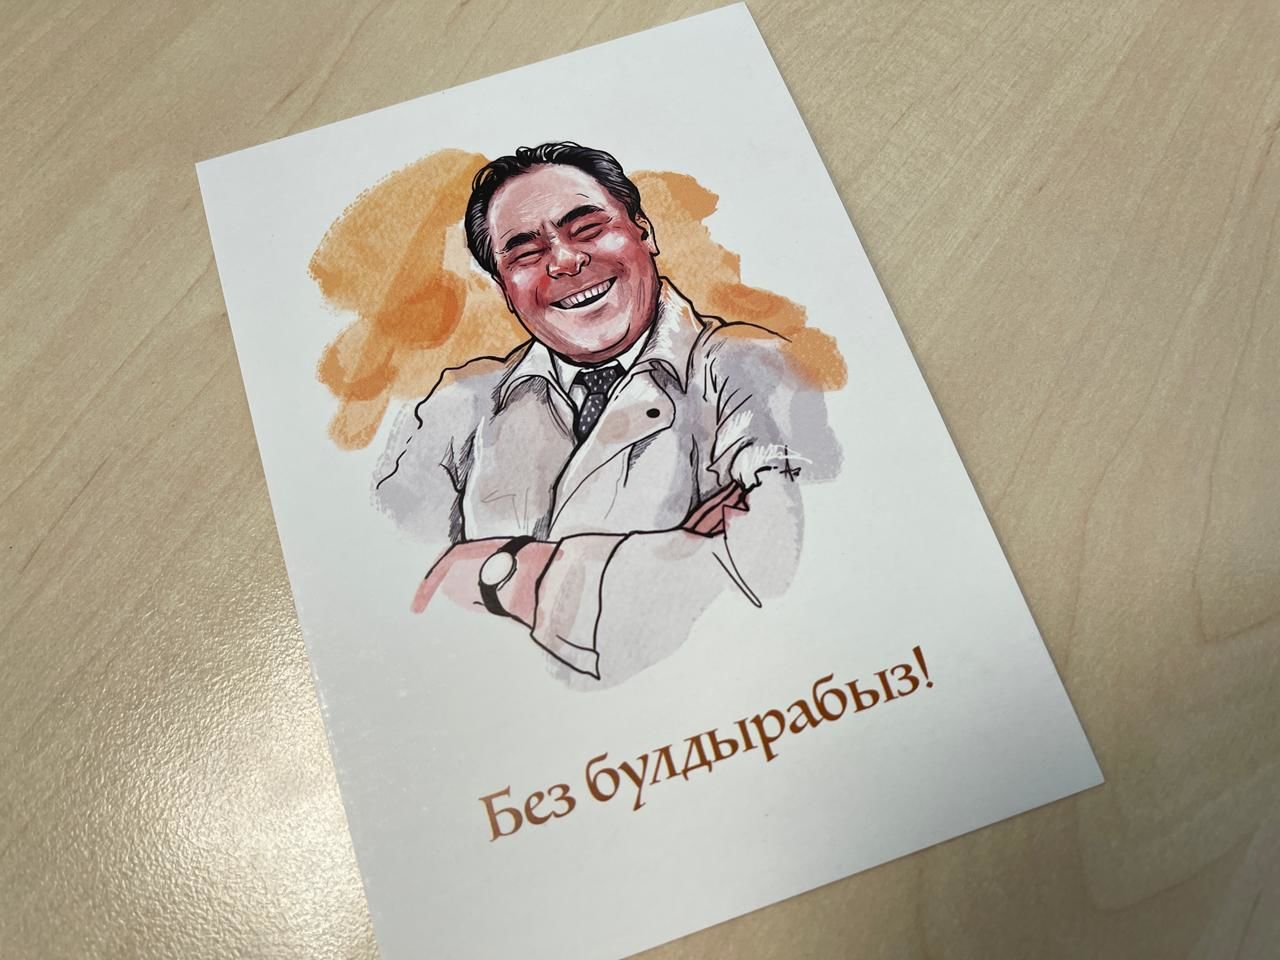 Фарид Мухаметшин поддержал проект татарского посткроссинга, отправив открытку певцу Фирдусу Тямаеву